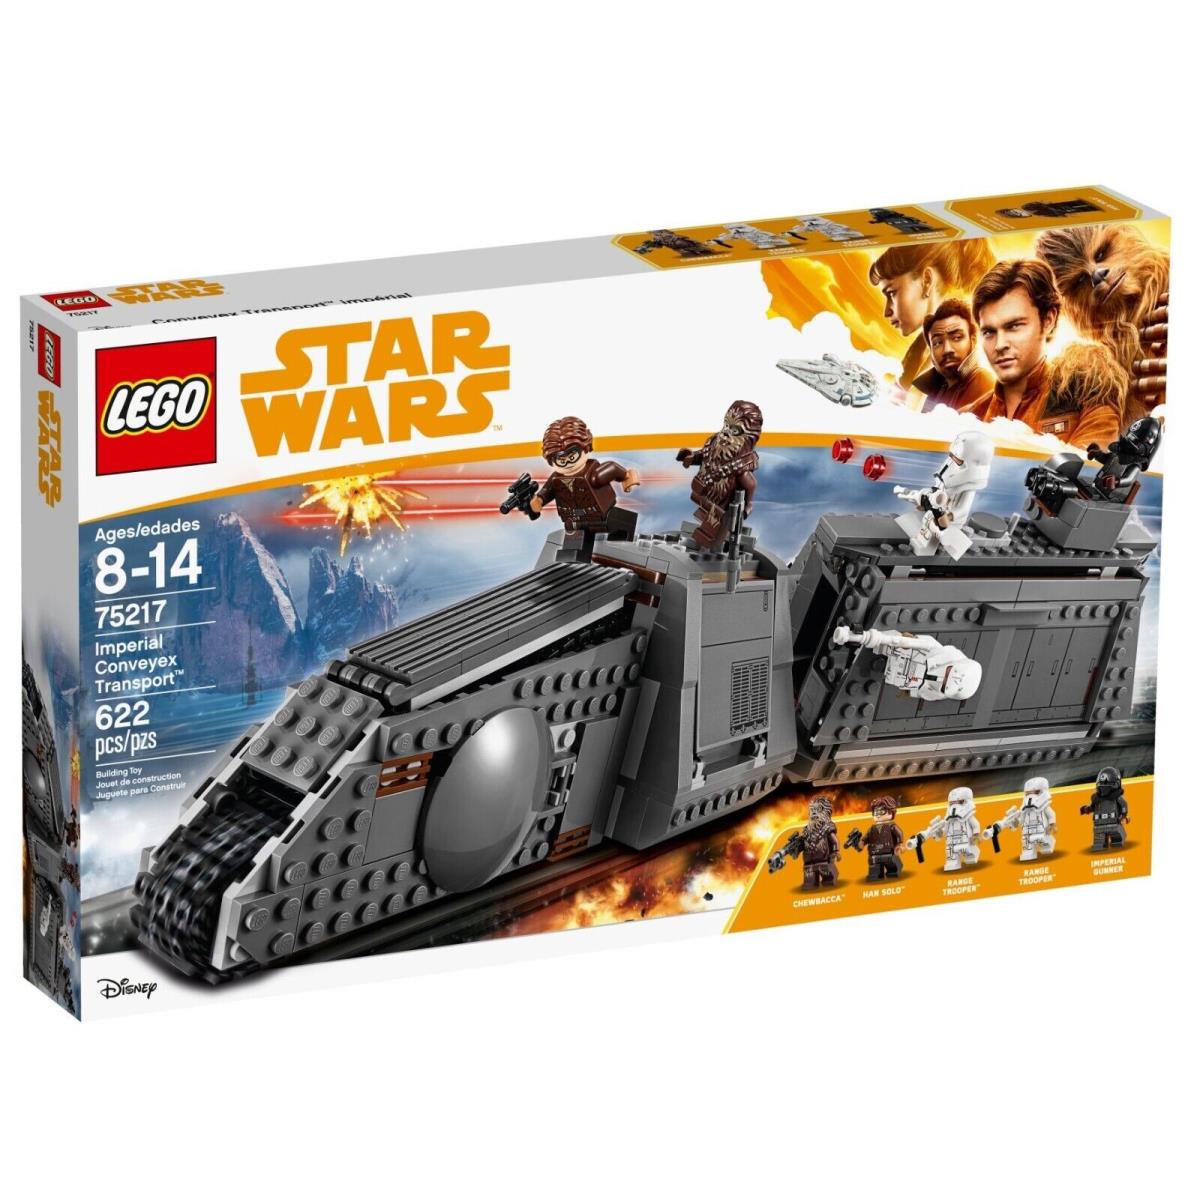 Lego 75217 Imperial Conveyex Transport Star Wars Retired Box